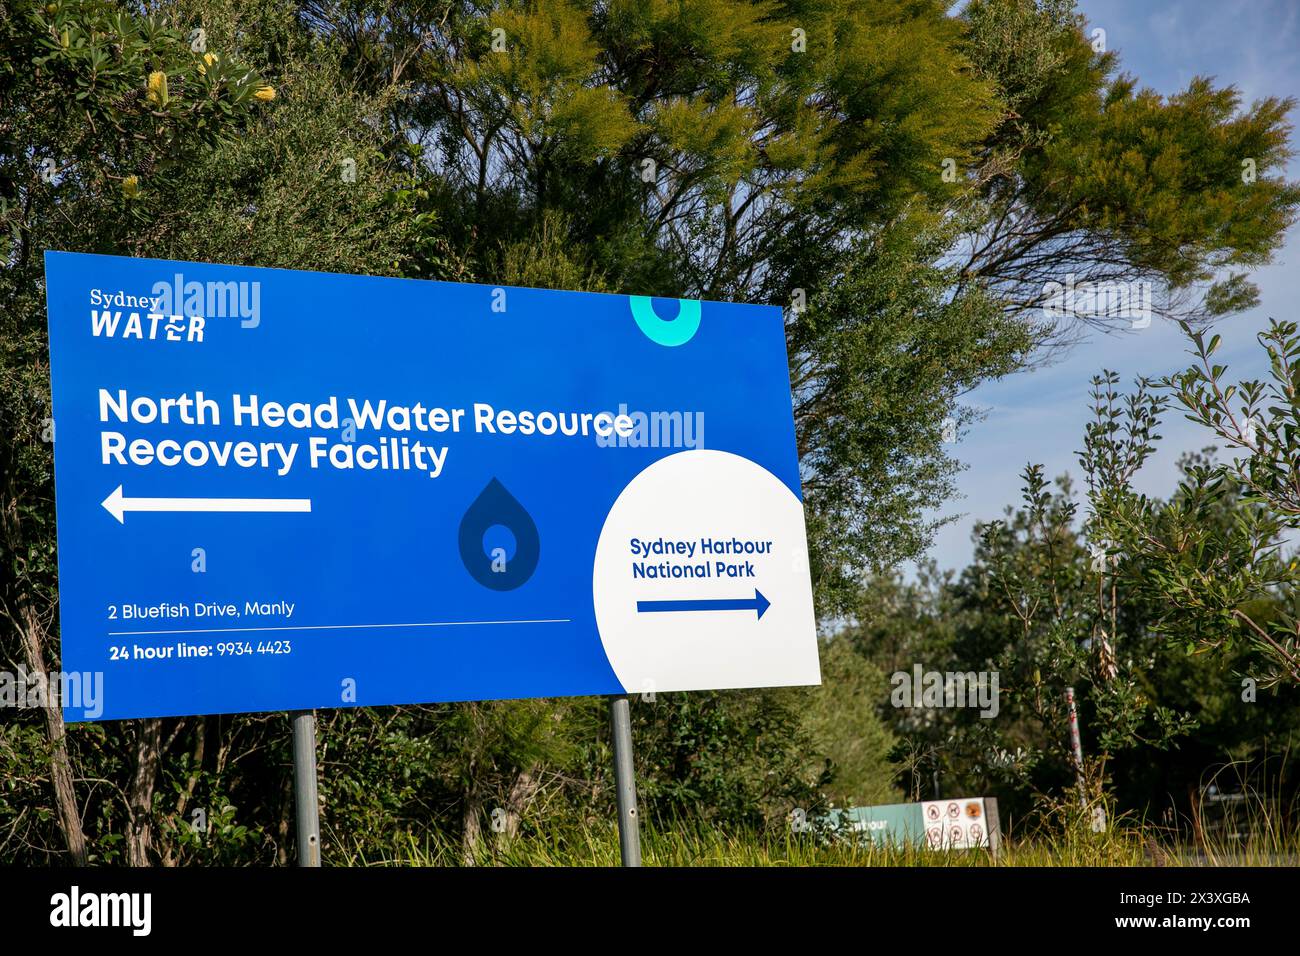 Sydney Water North Head Water Resource Recovery Center behandelt Abwasser, bevor es in den Ozean, NSW, Australien, geleitet wird Stockfoto